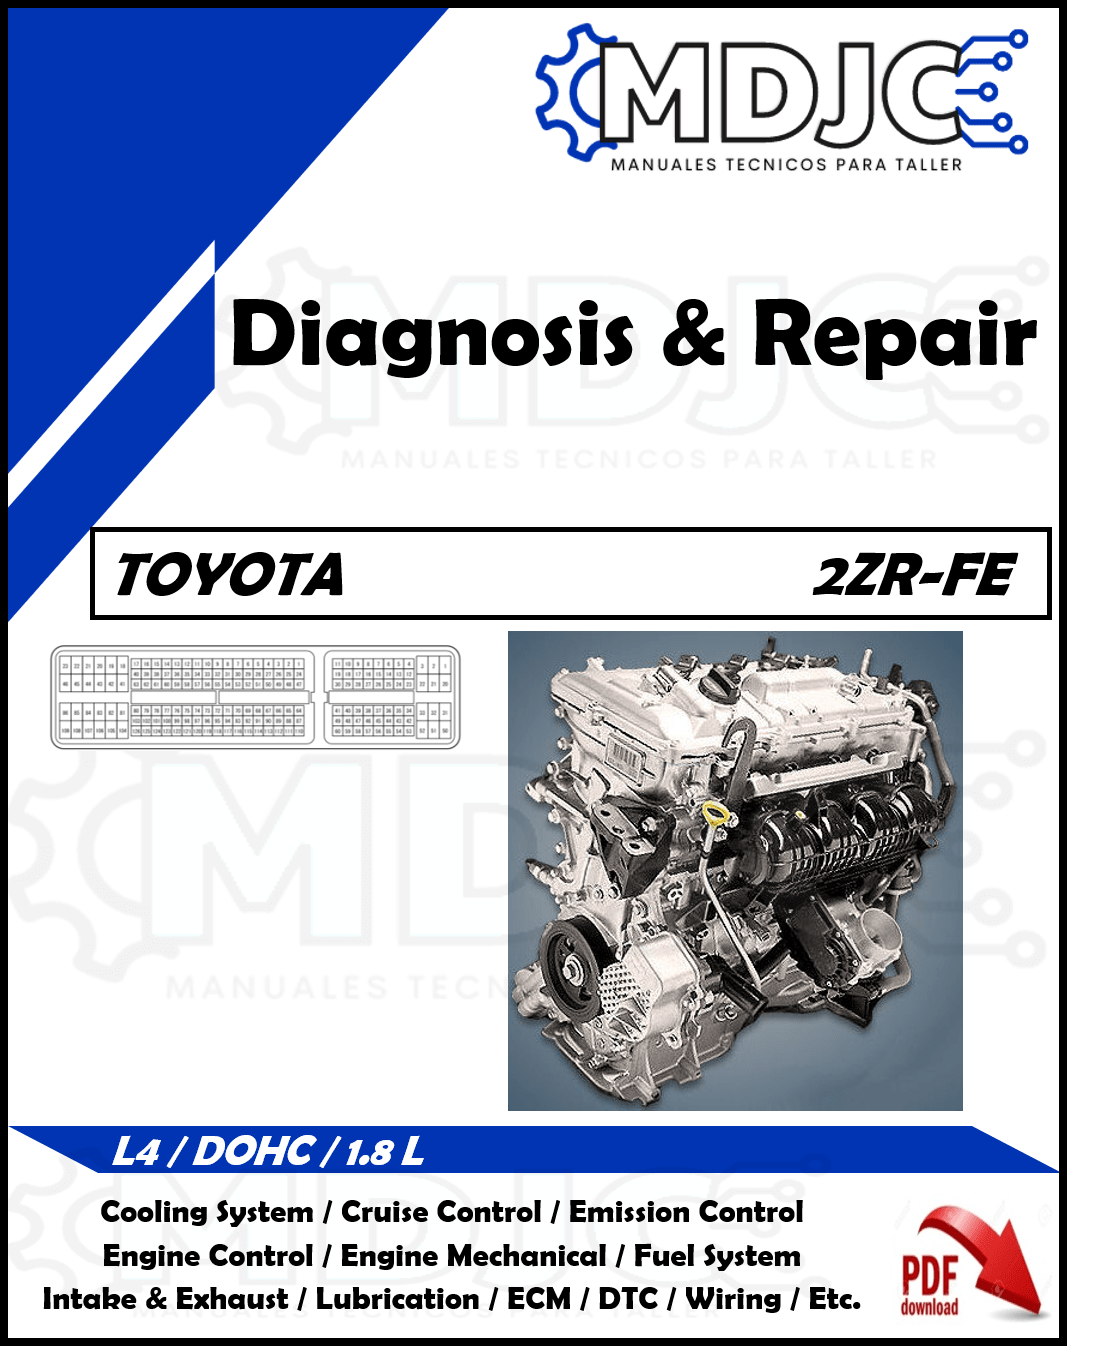 Manual de Taller (Diagnóstico y Reparación) Motor Toyota 2ZR-FE (1.8 L)